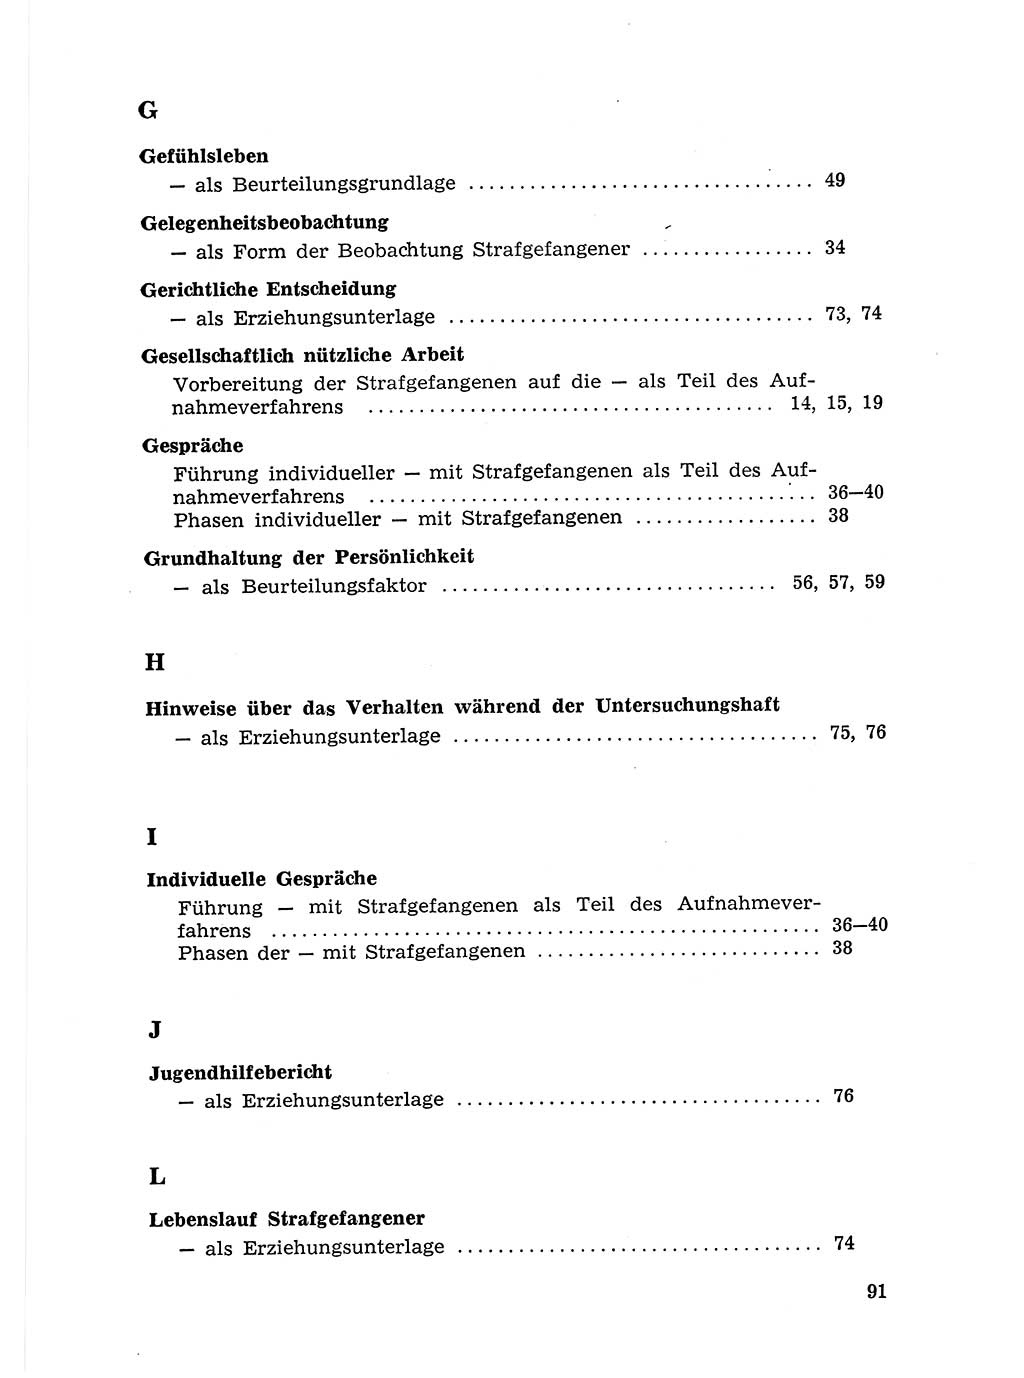 Sozialistischer Strafvollzug (SV) [Deutsche Demokratische Republik (DDR)] 1972, Seite 91 (Soz. SV DDR 1972, S. 91)